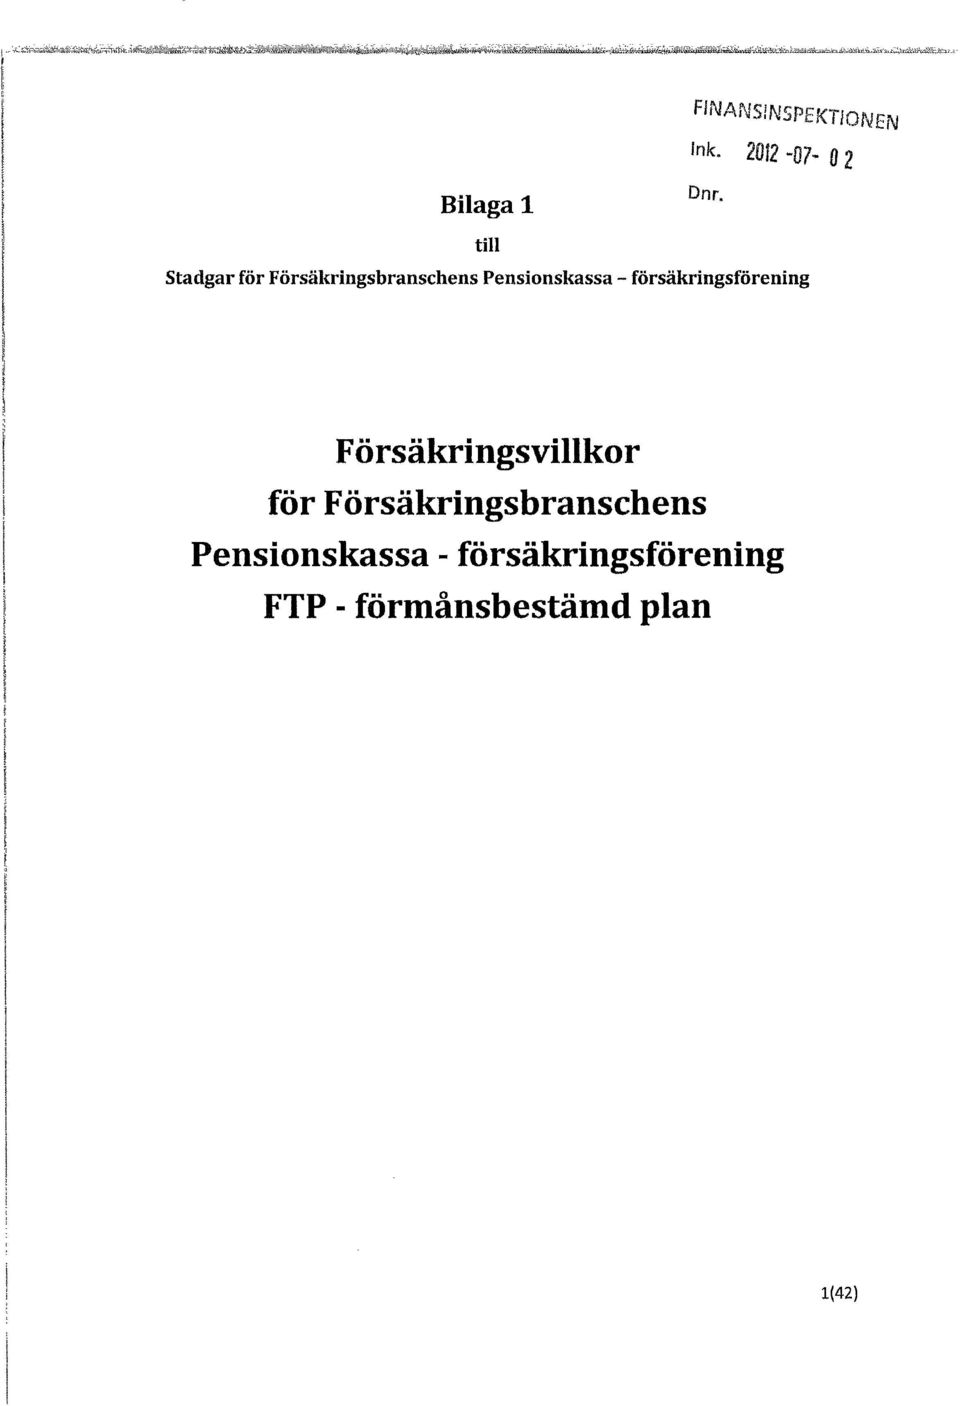 2012-07 O2 Bilaga 1 Dnr, till Stadgar för Försäkringsbranschens Pensionskassa -